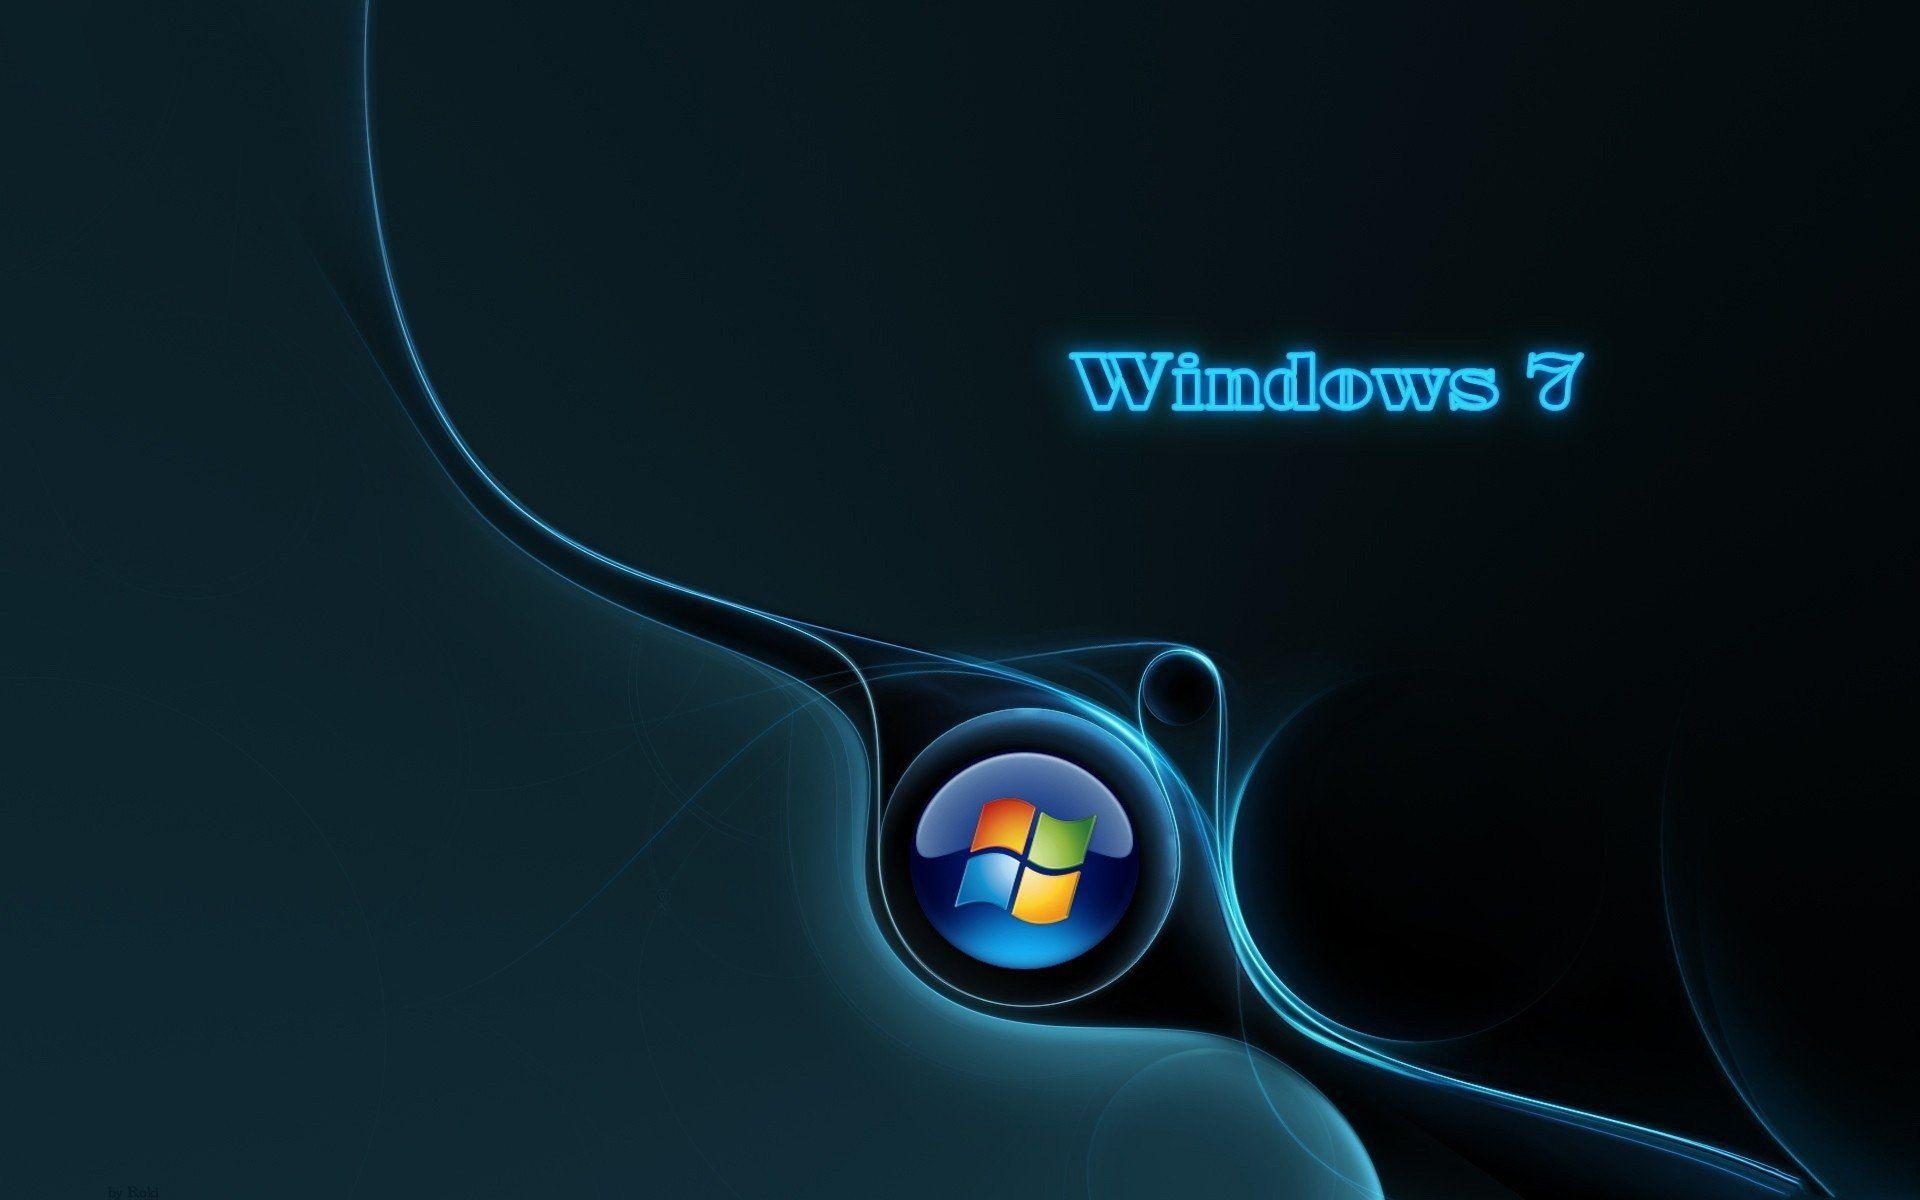 Hình nền Windows 7 HD mang đến cho bạn chất lượng hình ảnh sắc nét và tạo cảm giác sống động. Hãy tưởng tượng khung cảnh đẹp lung linh được tái hiện trên màn hình máy tính của bạn!